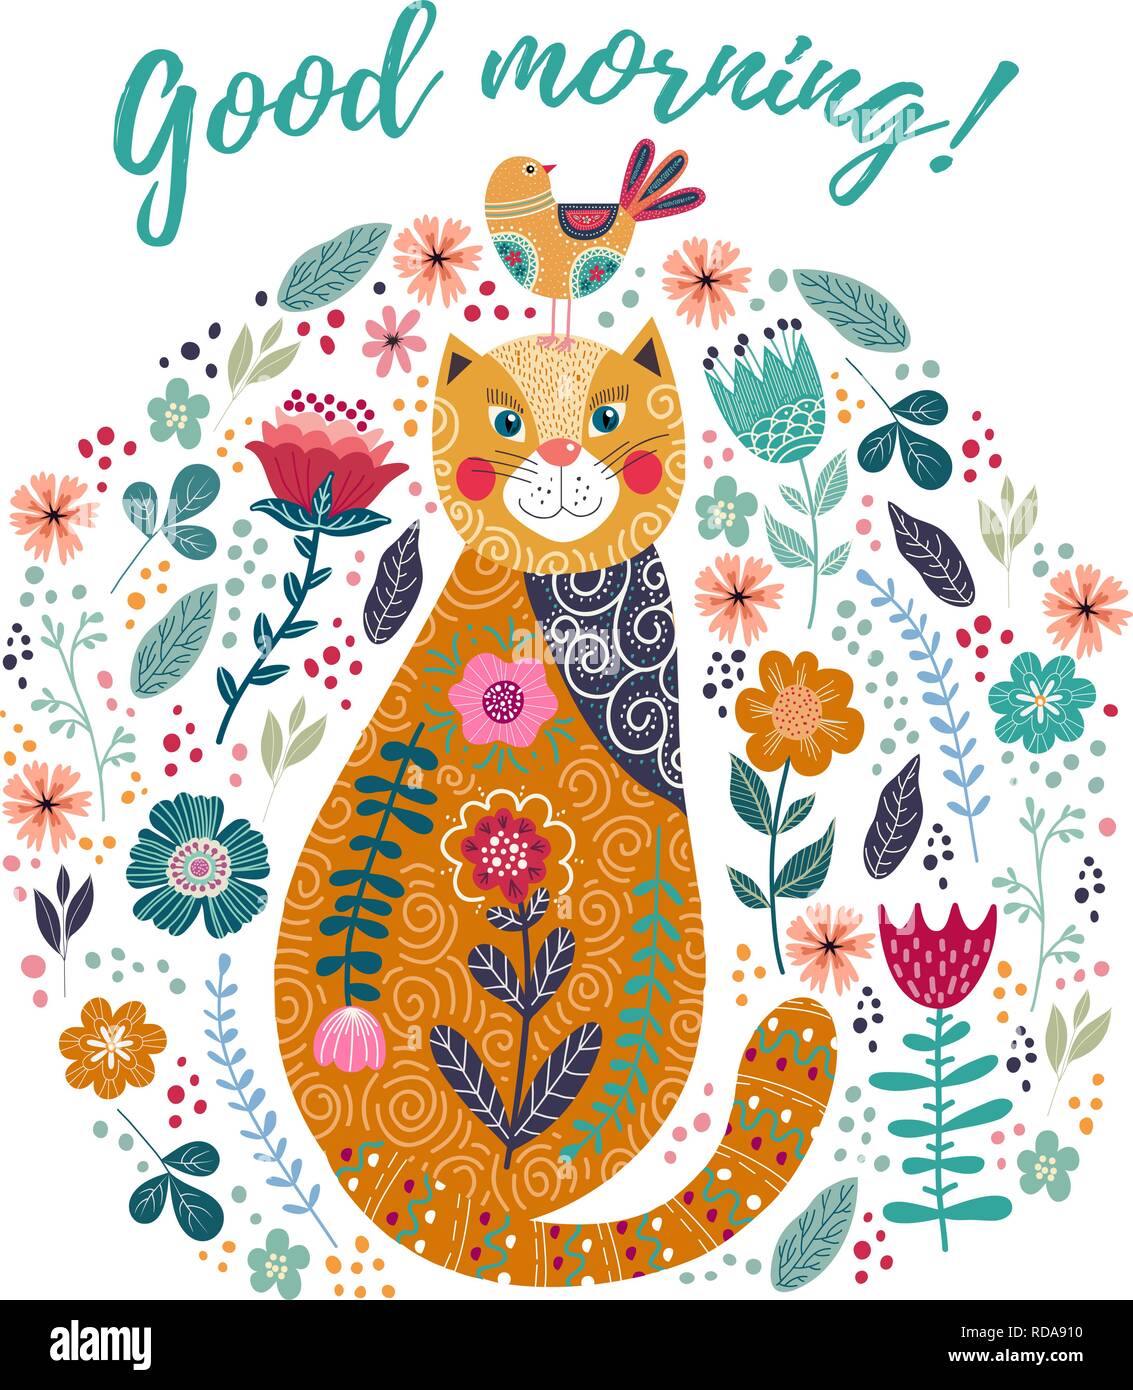 Buona mattina. Vettore d'arte illustrazione colorata con cute cat, uccelli e fiori su uno sfondo bianco. Illustrazione Vettoriale